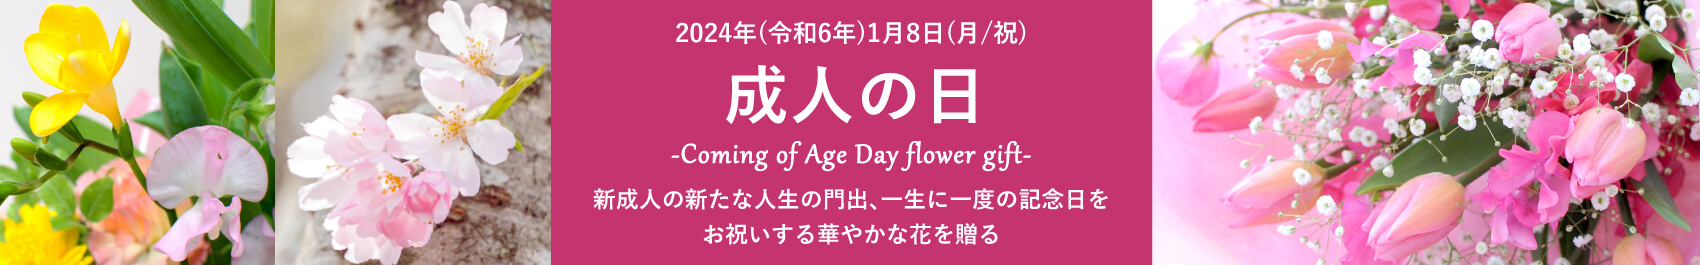 成人の日/成人祝い/成人式の花ギフト